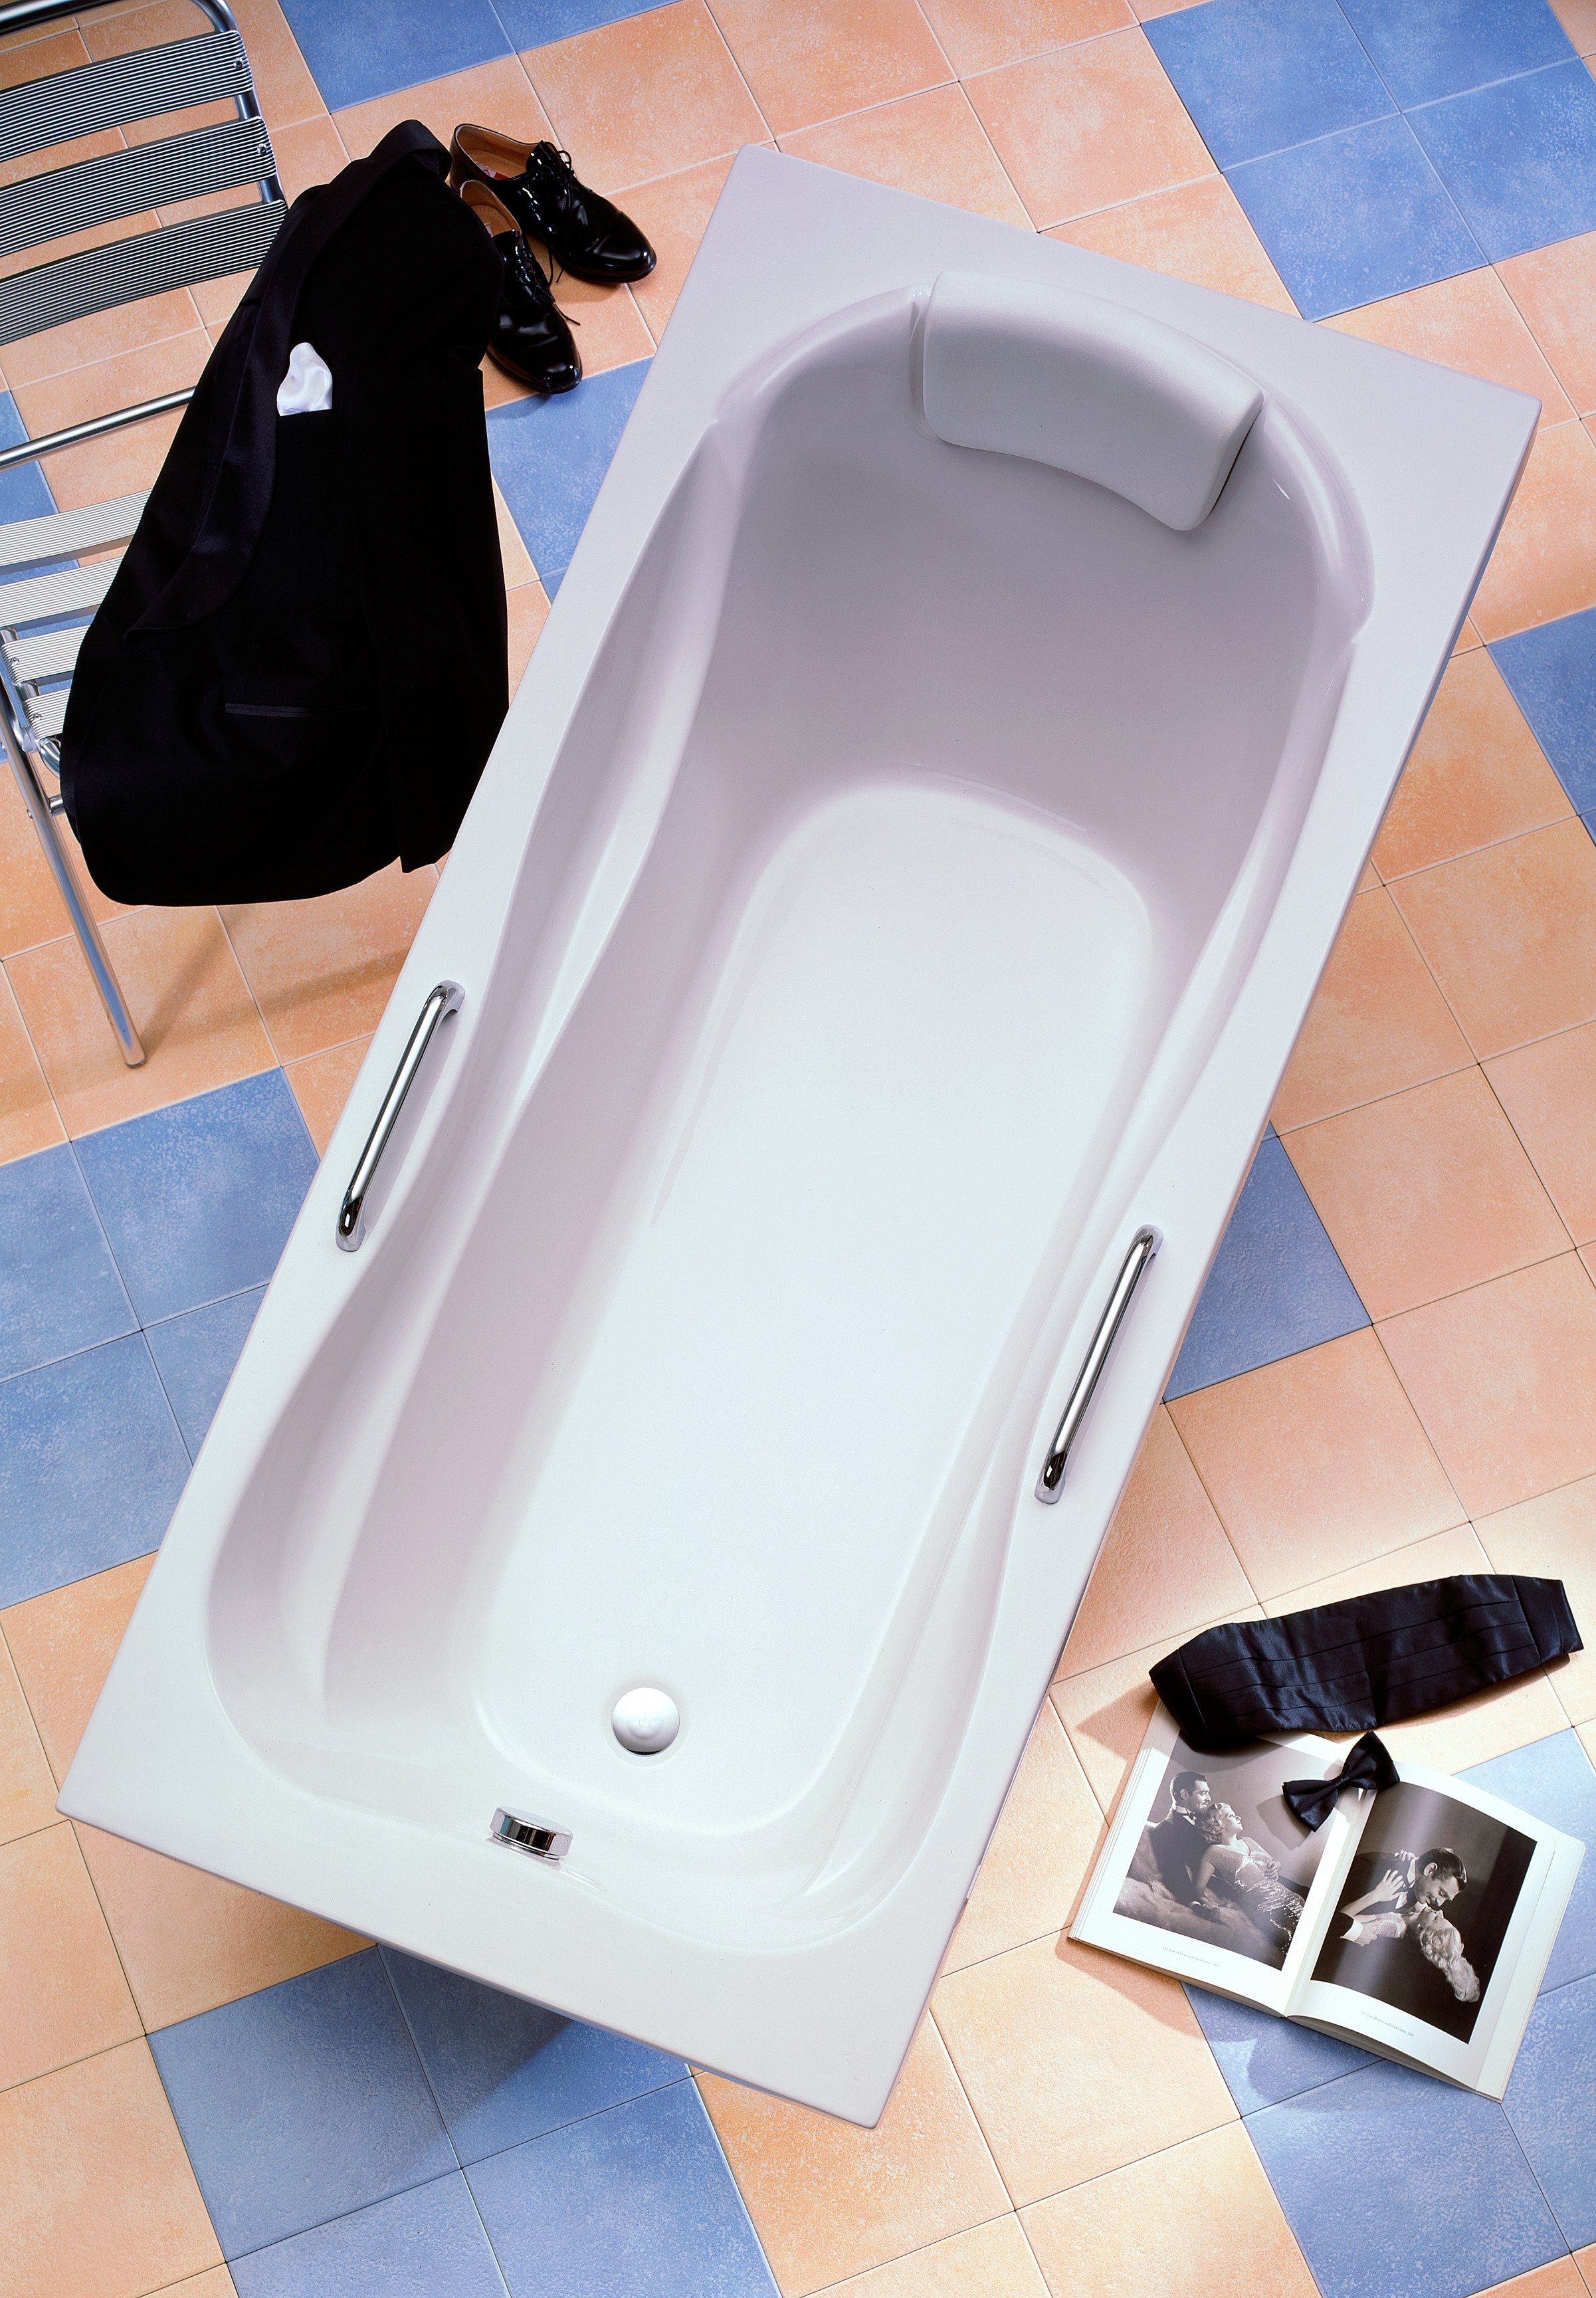 OTTOFOND Badewanne Jamaica, (5-tlg), mit Fußgestell, Ablaufgarnitur, Nackenkissen und Griffe